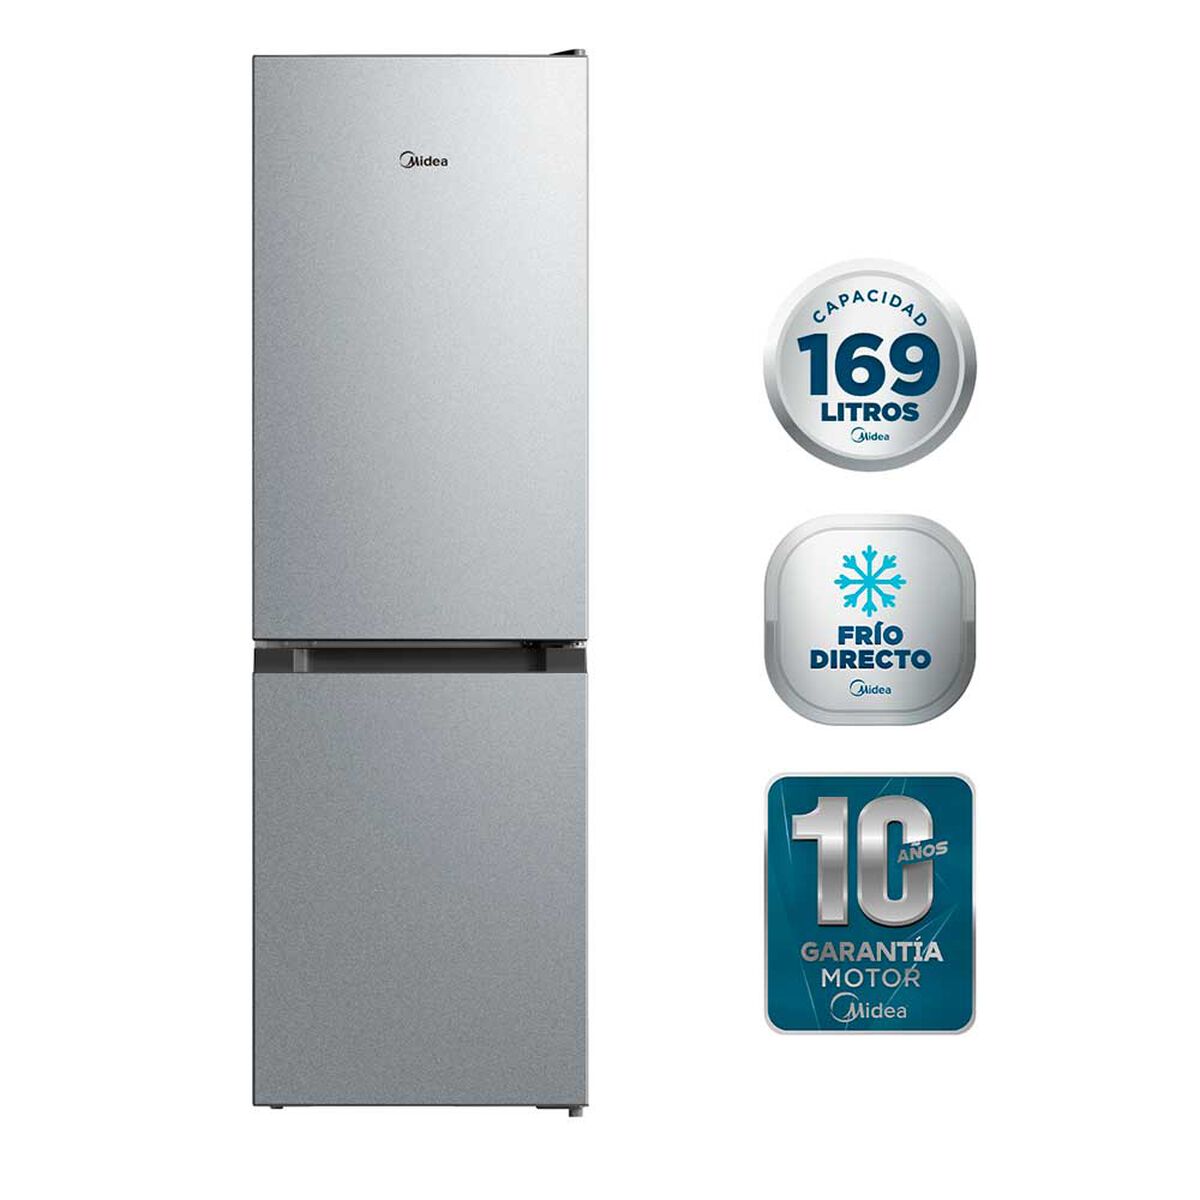 Refrigerador Frío Directo Midea MDRB241FGE50 169 lts.